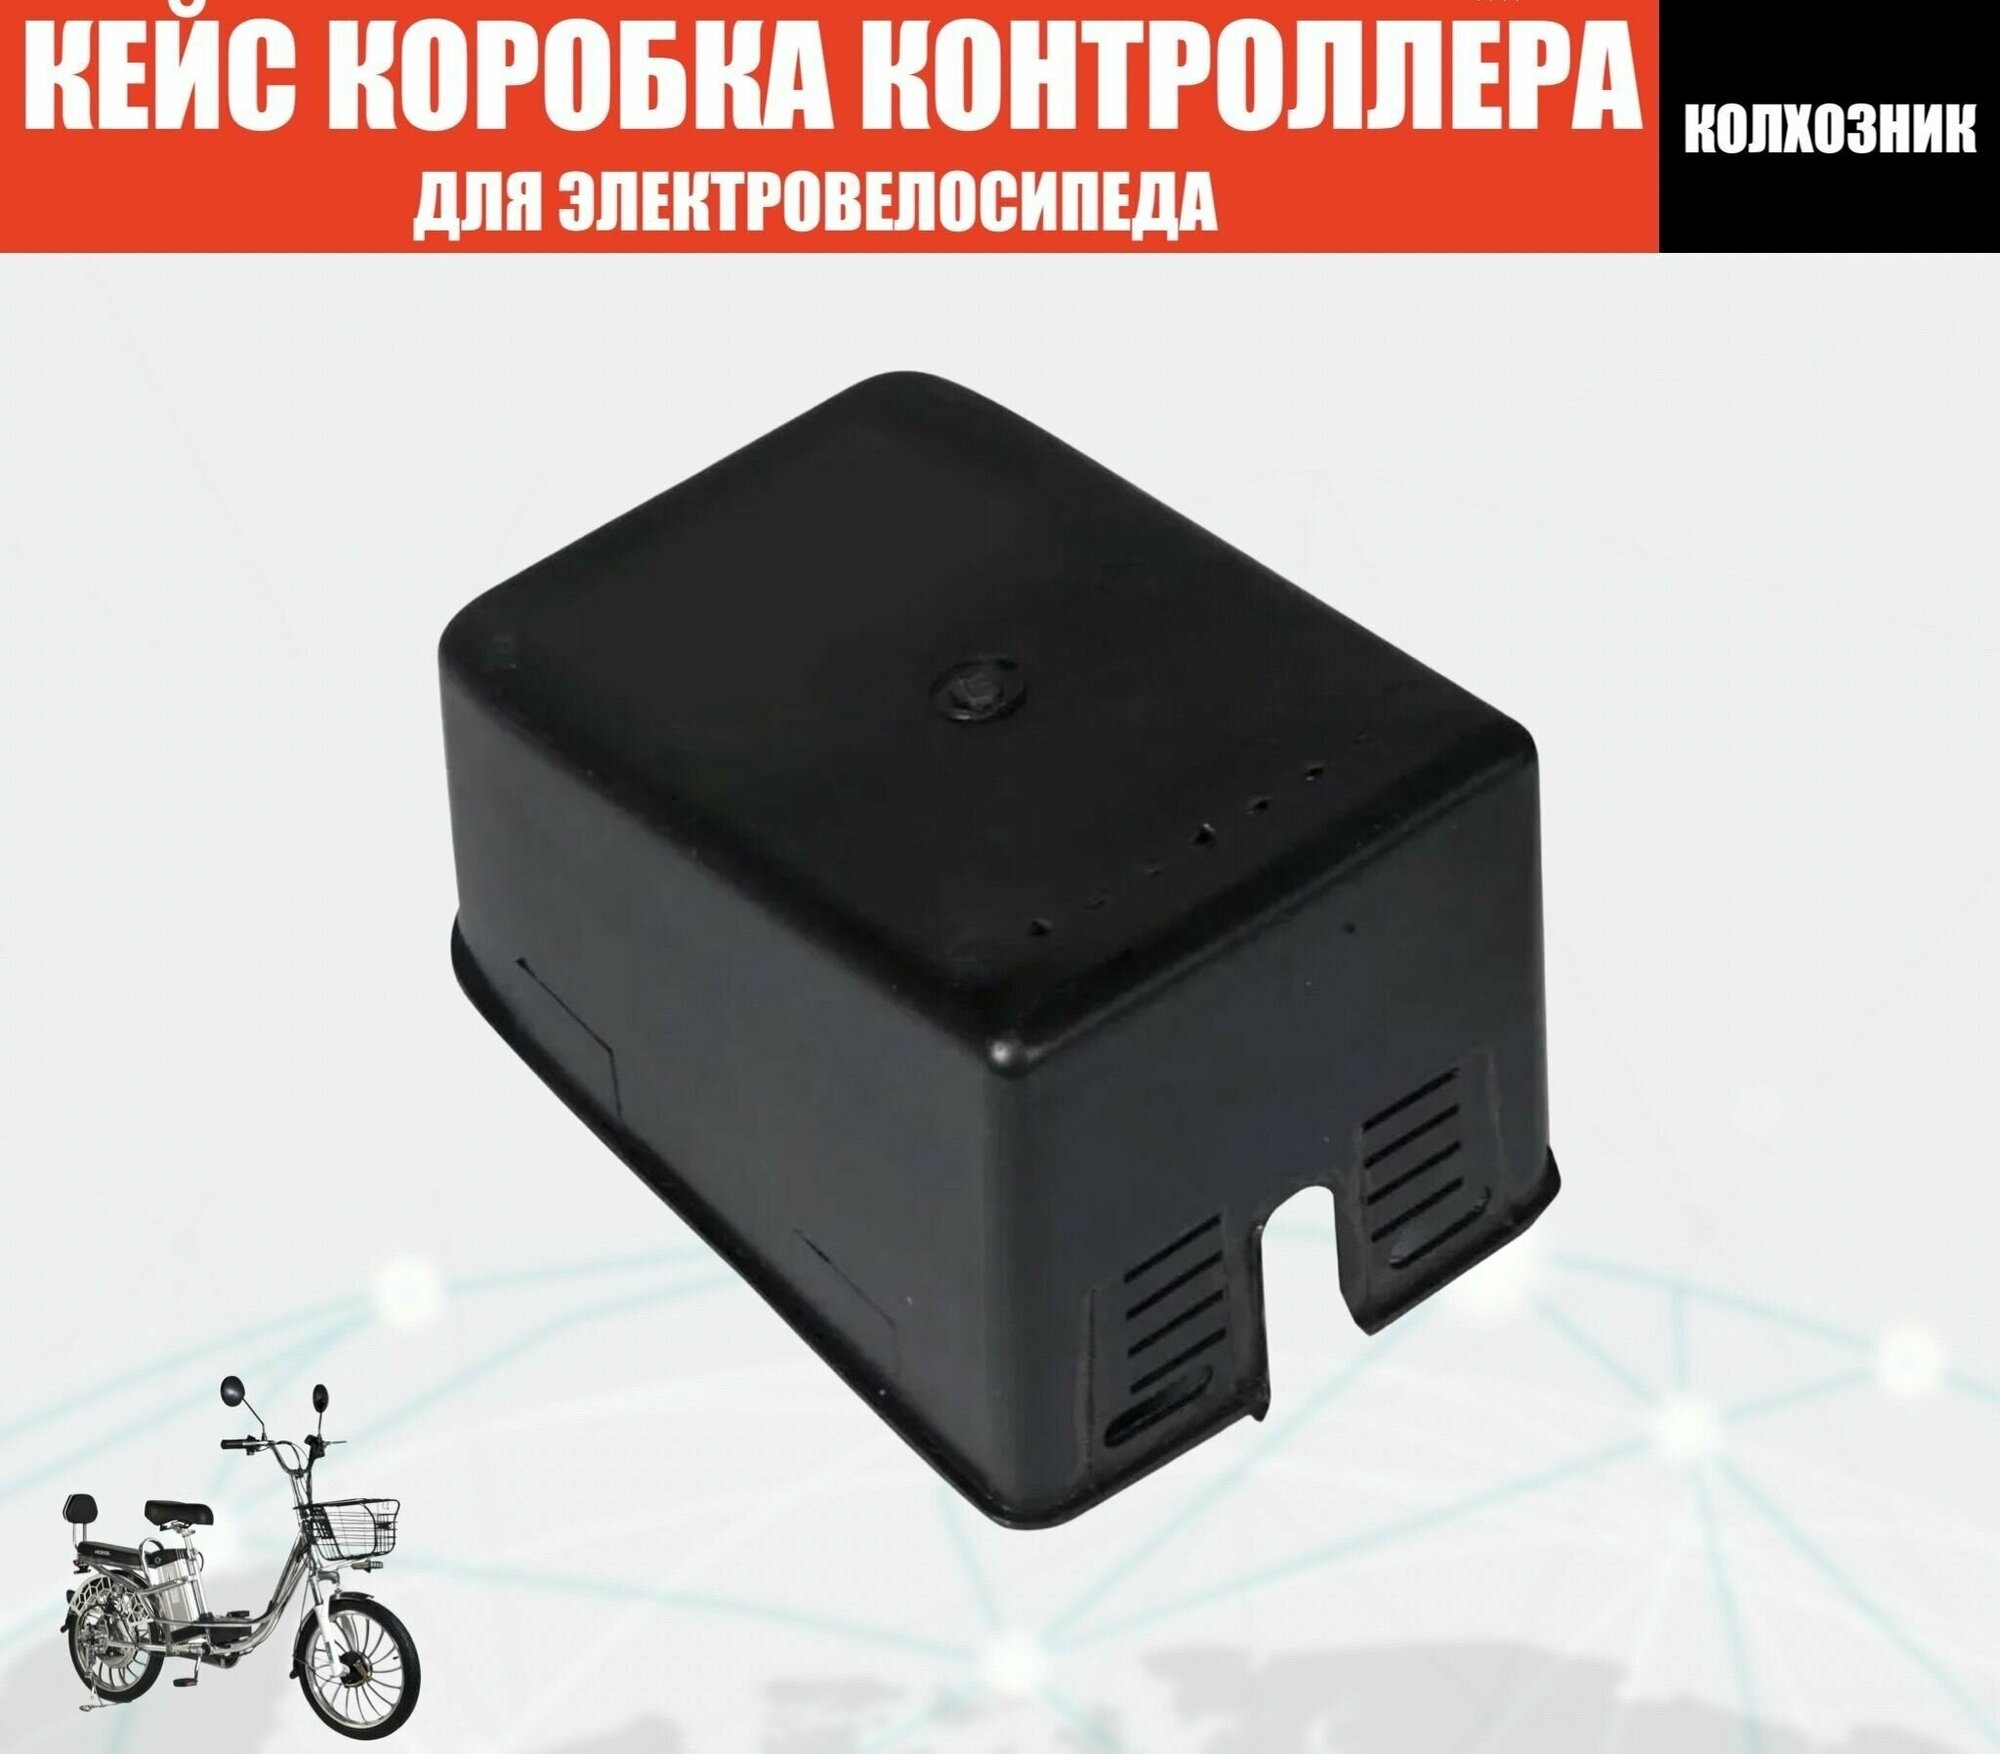 Кейс коробка контроллера для электровелосипедов (колхозник)